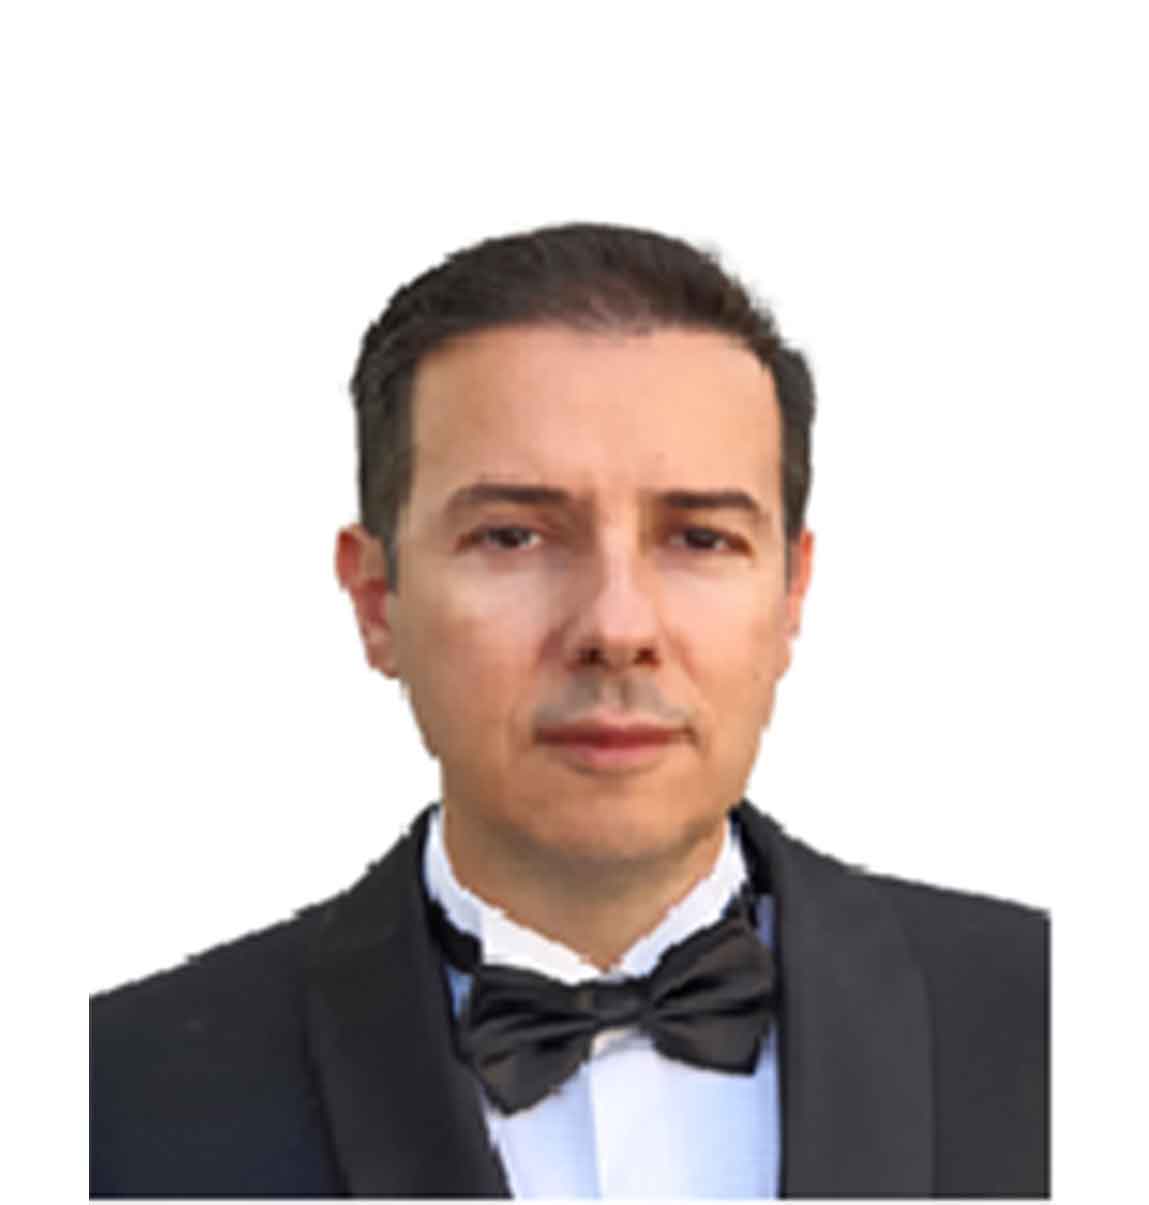 Dr. Demir Hadzic